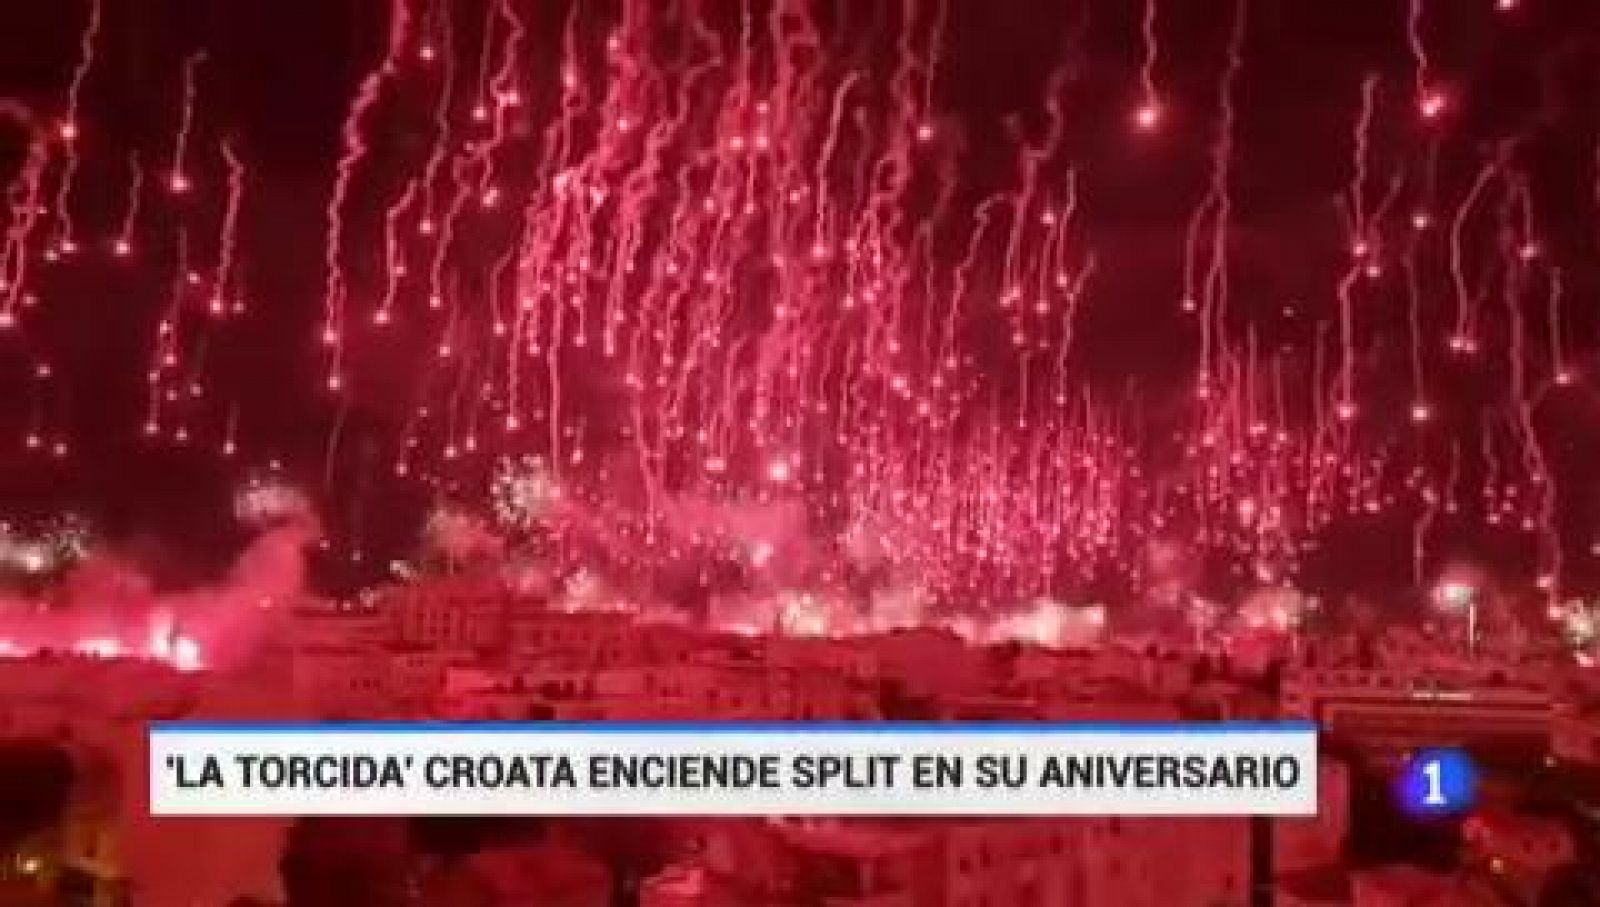 Explosiva celebración de los 70 años de 'La Torcida' en Split